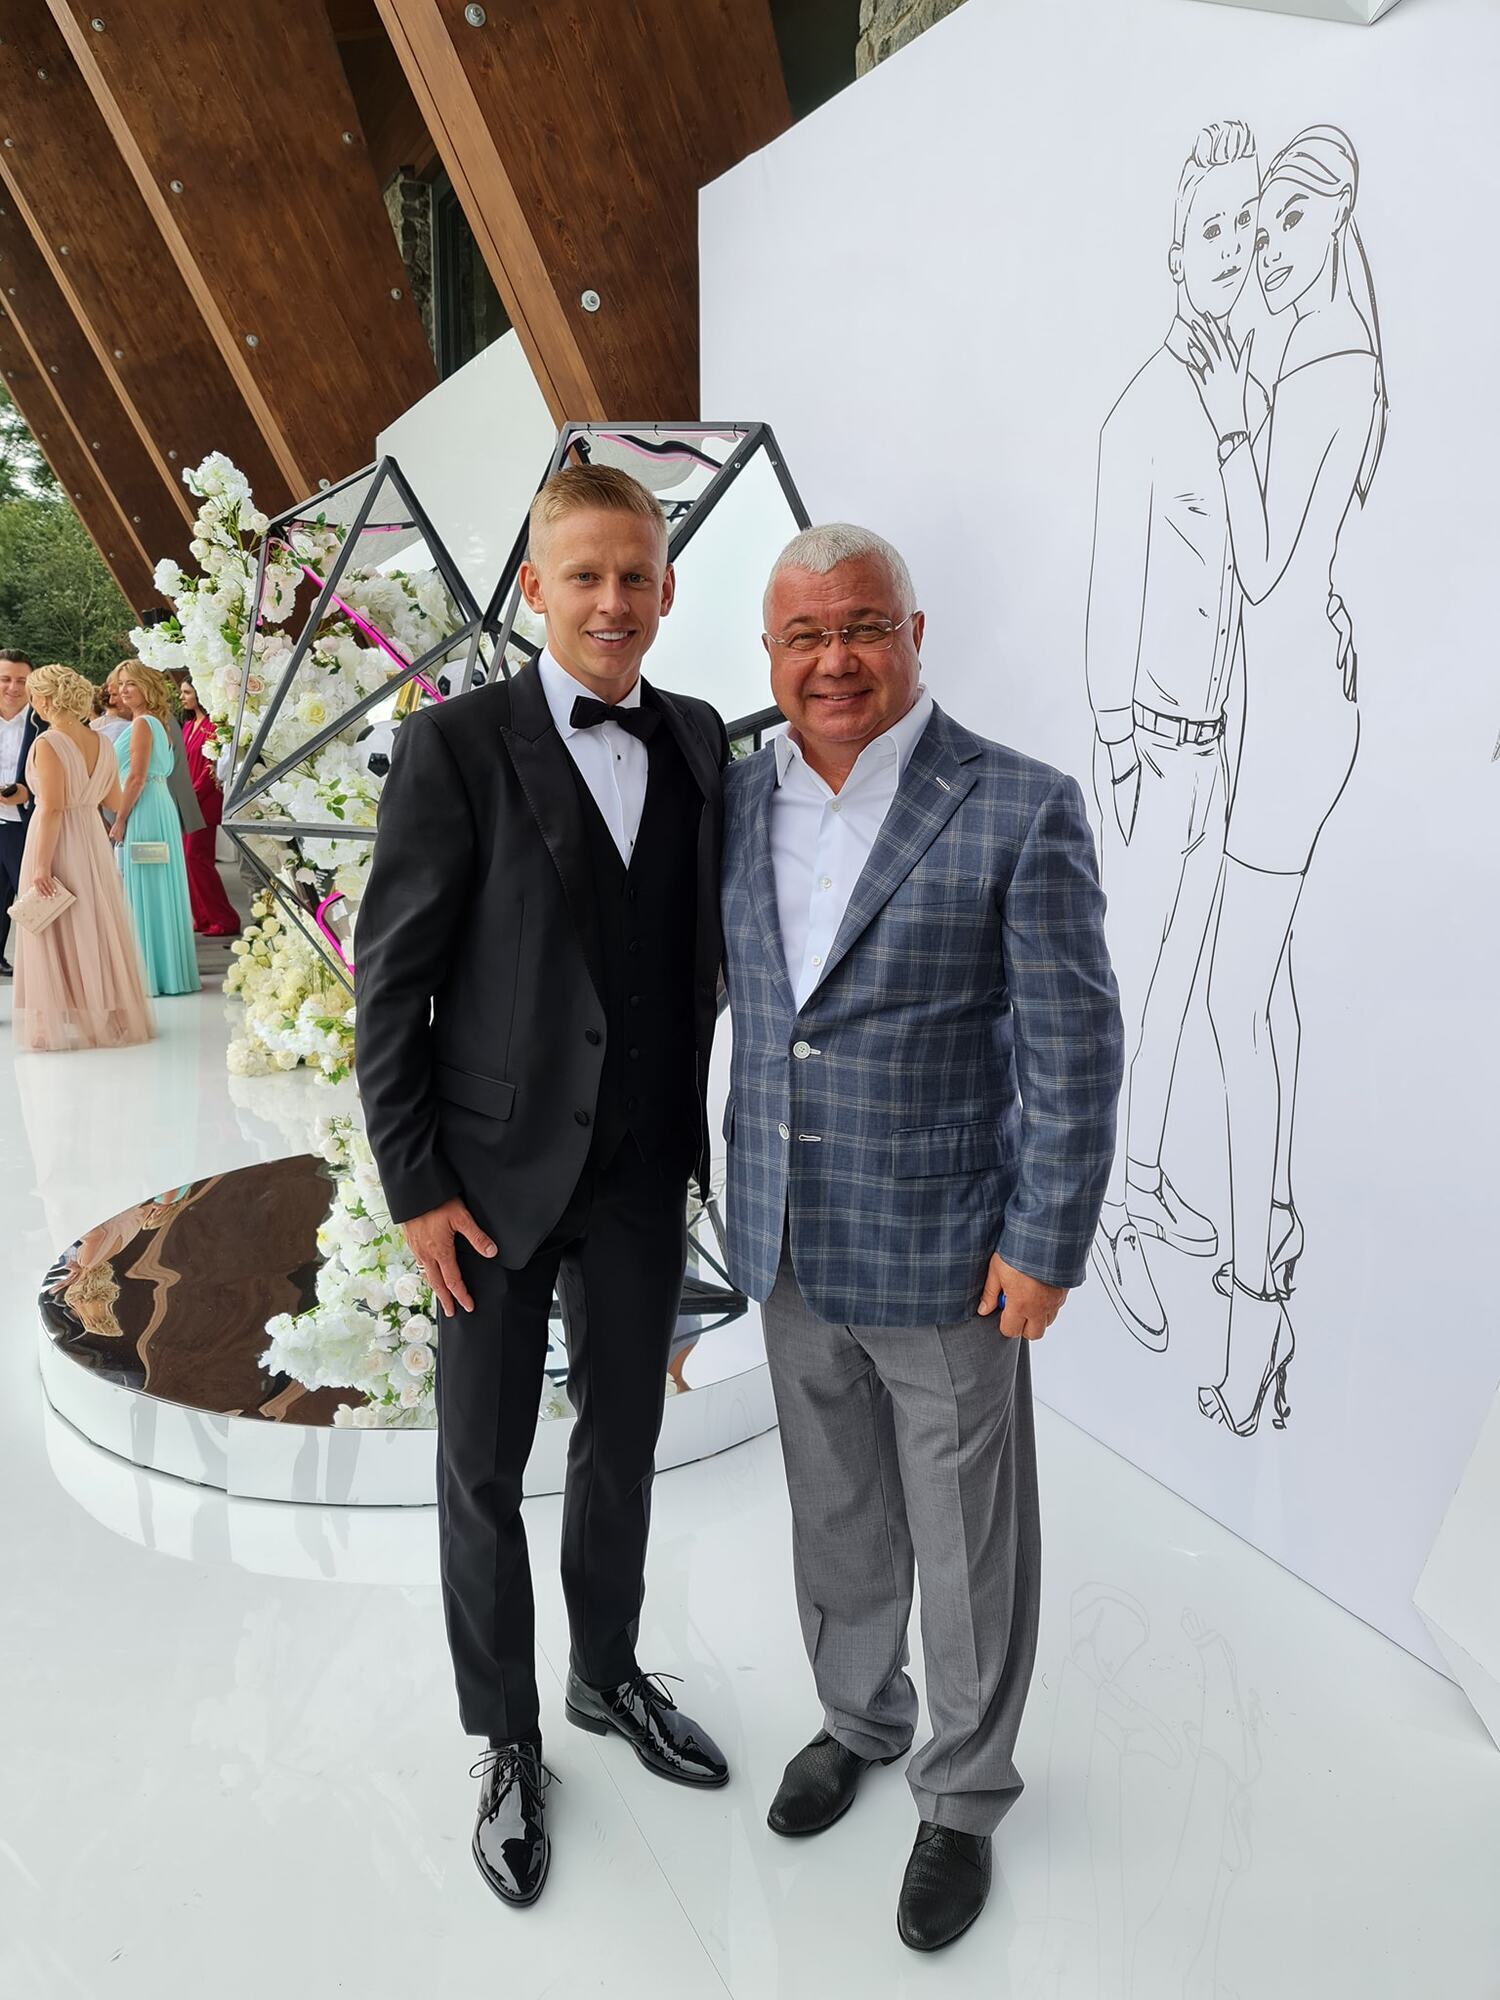 Олександр Зінченко запросив на весілля Юрія Сапронова (праворуч)